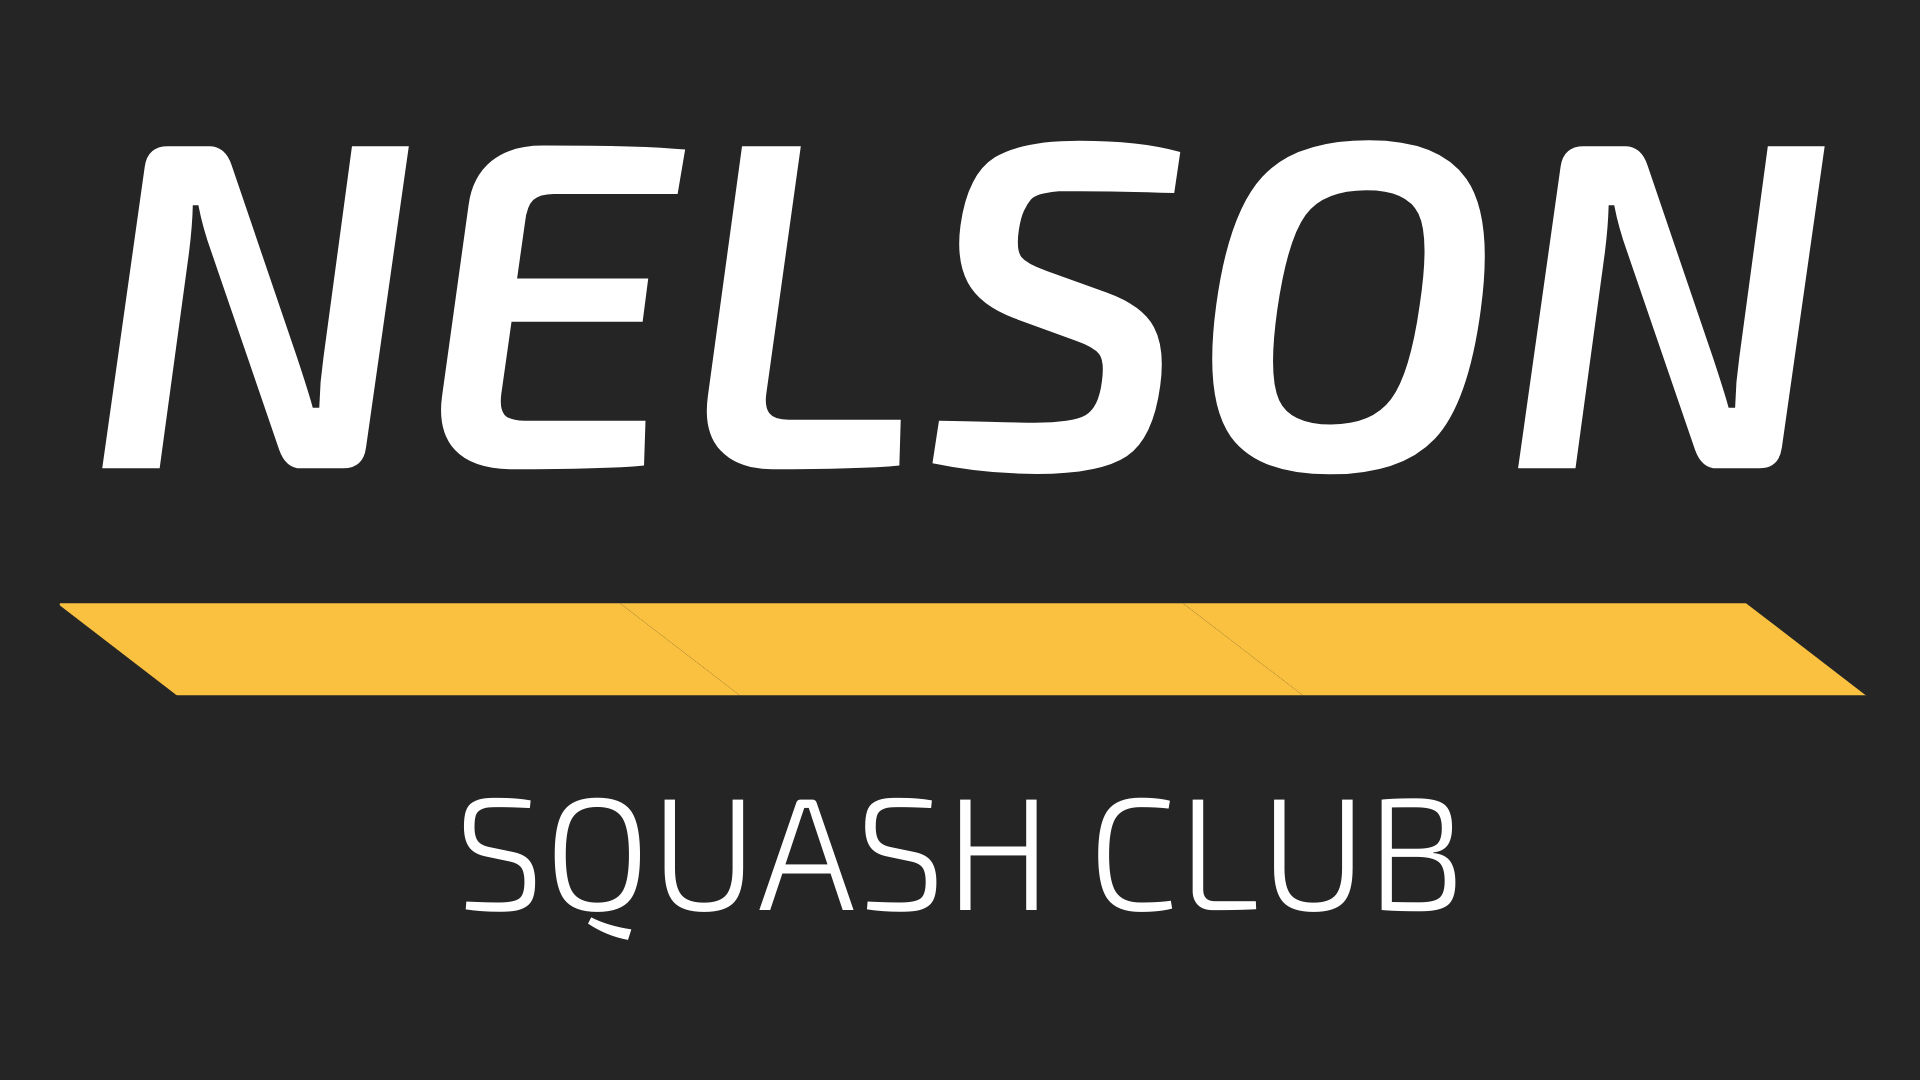 Nelson Squash Club